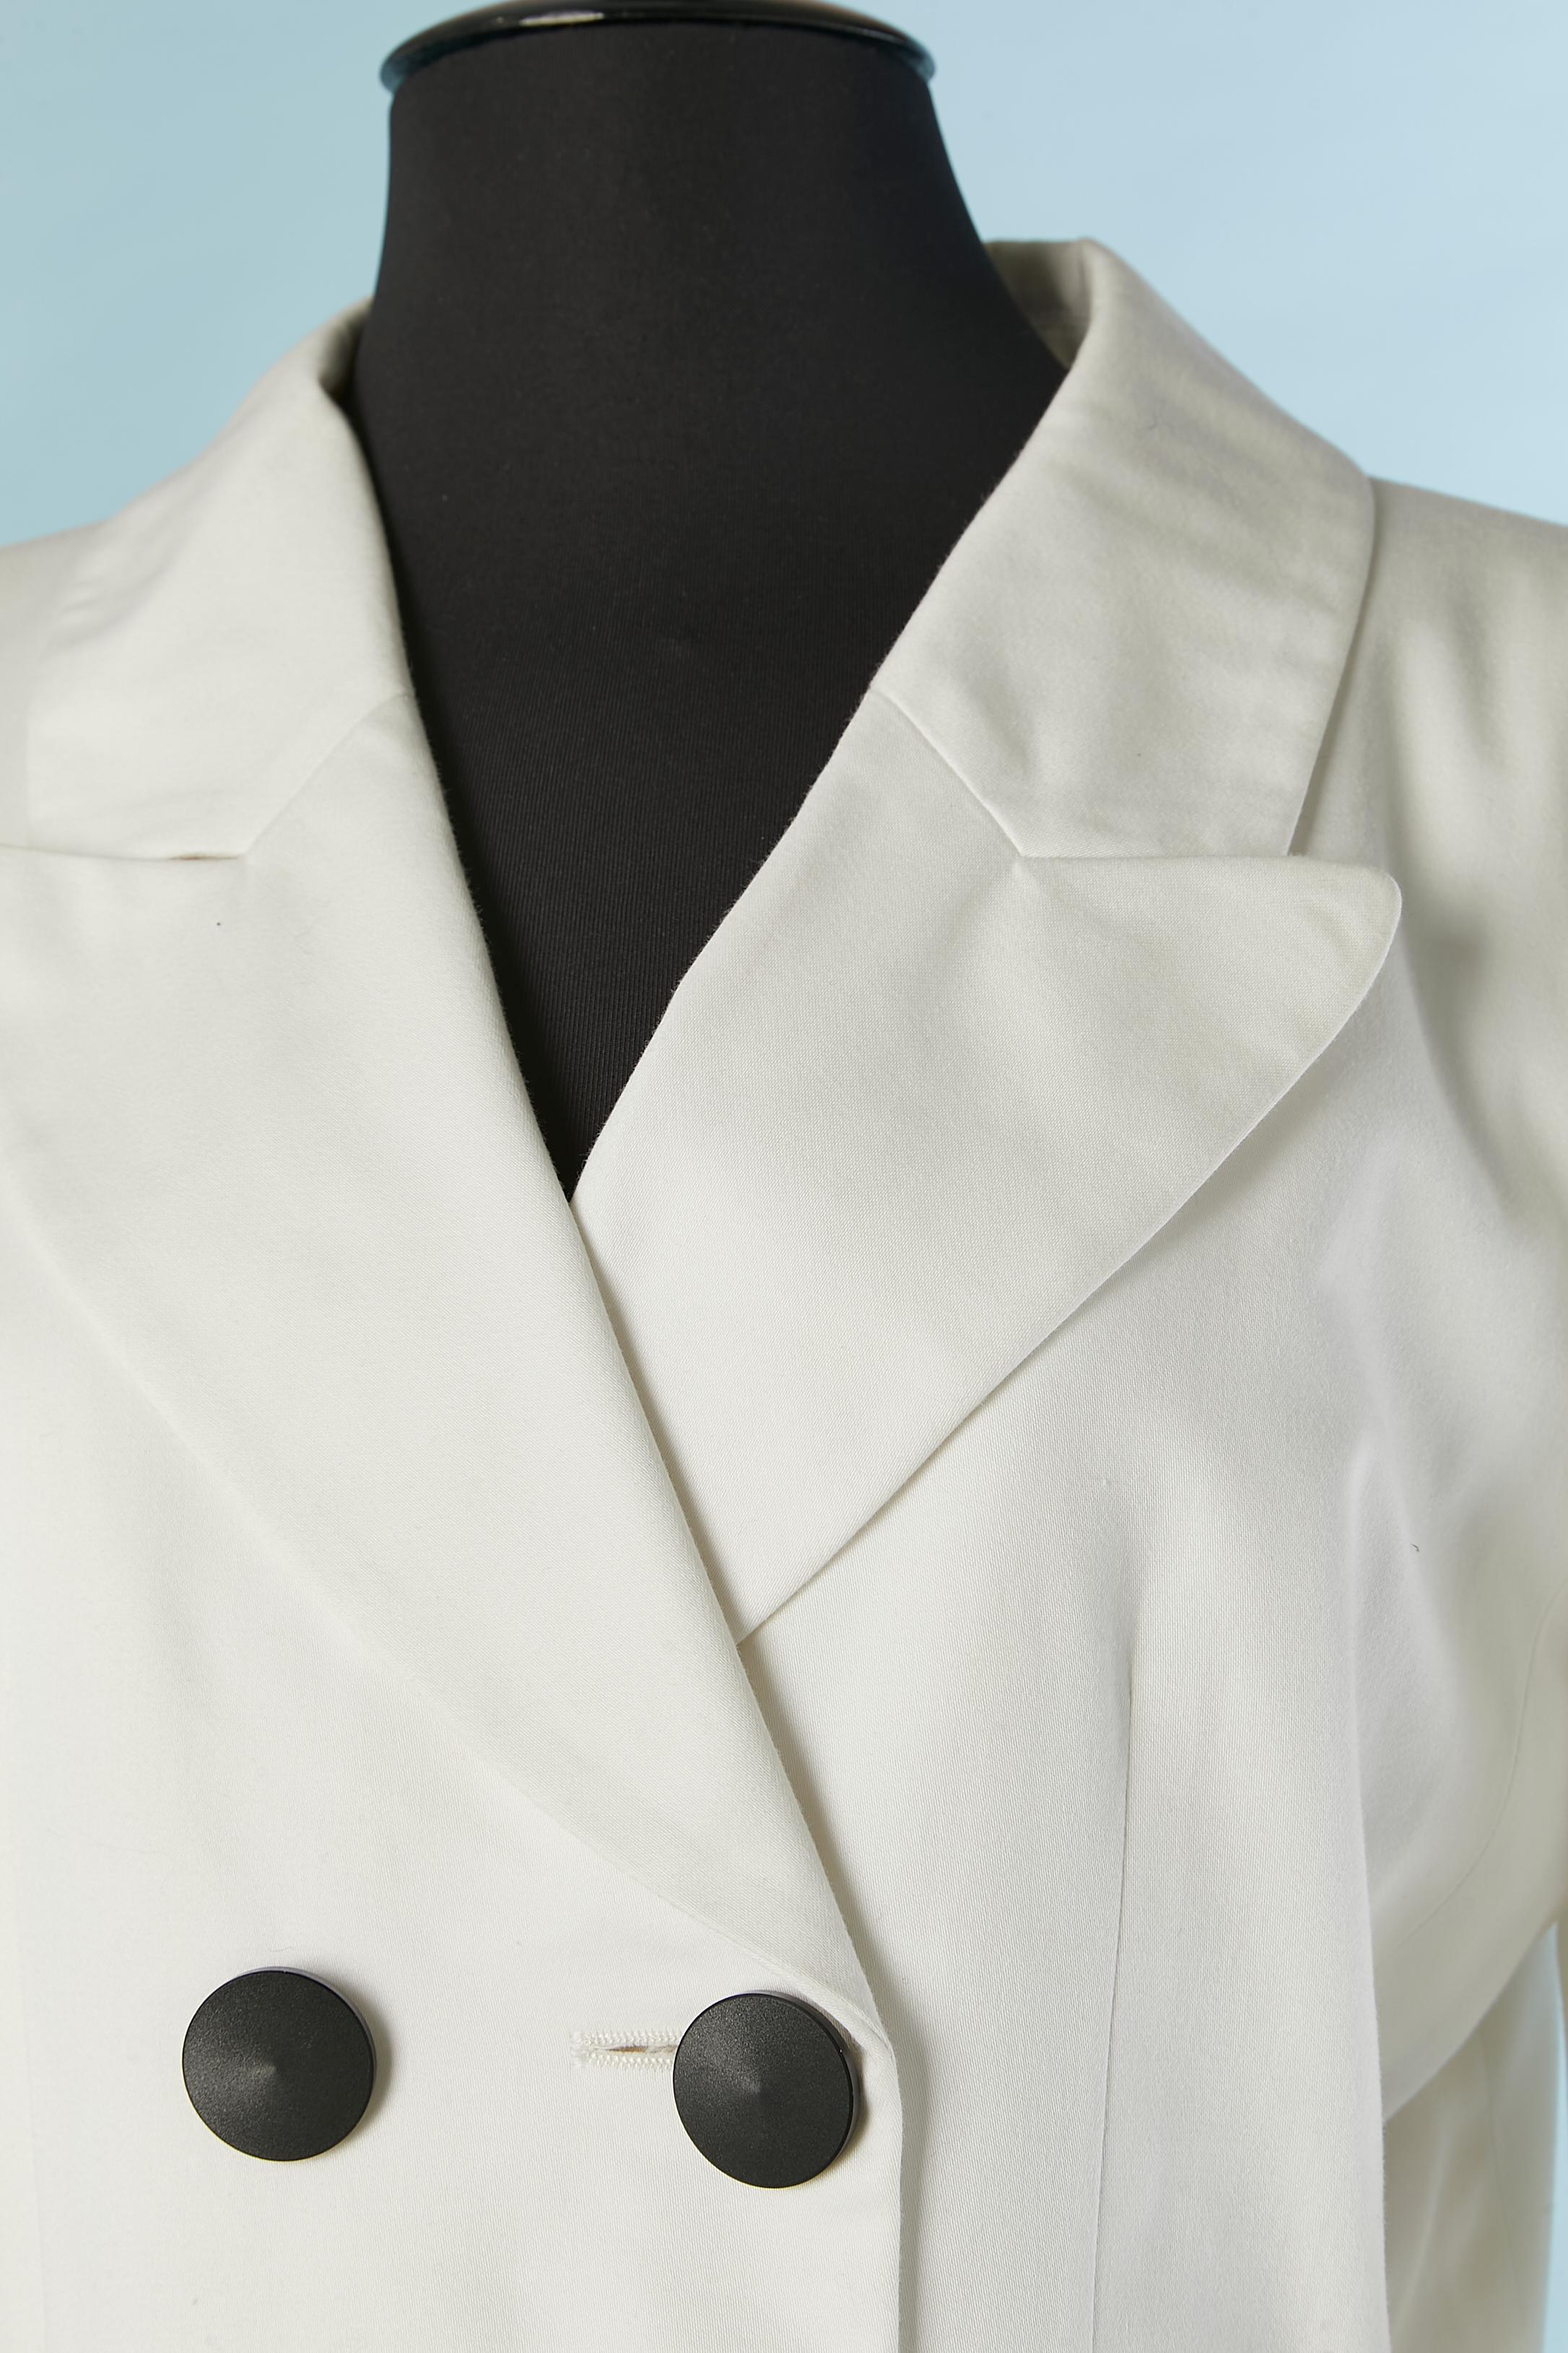 Tailleur jupe en coton blanc avec boutons noirs. Pas de composition de l'étiquette du tissu mais la doublure est probablement en acétate ou en rayonne. Pad d'épaule. 
Taille 36 (Fr) pour la veste mais convient à M/L et 38 (Fr) pour la jupe mais